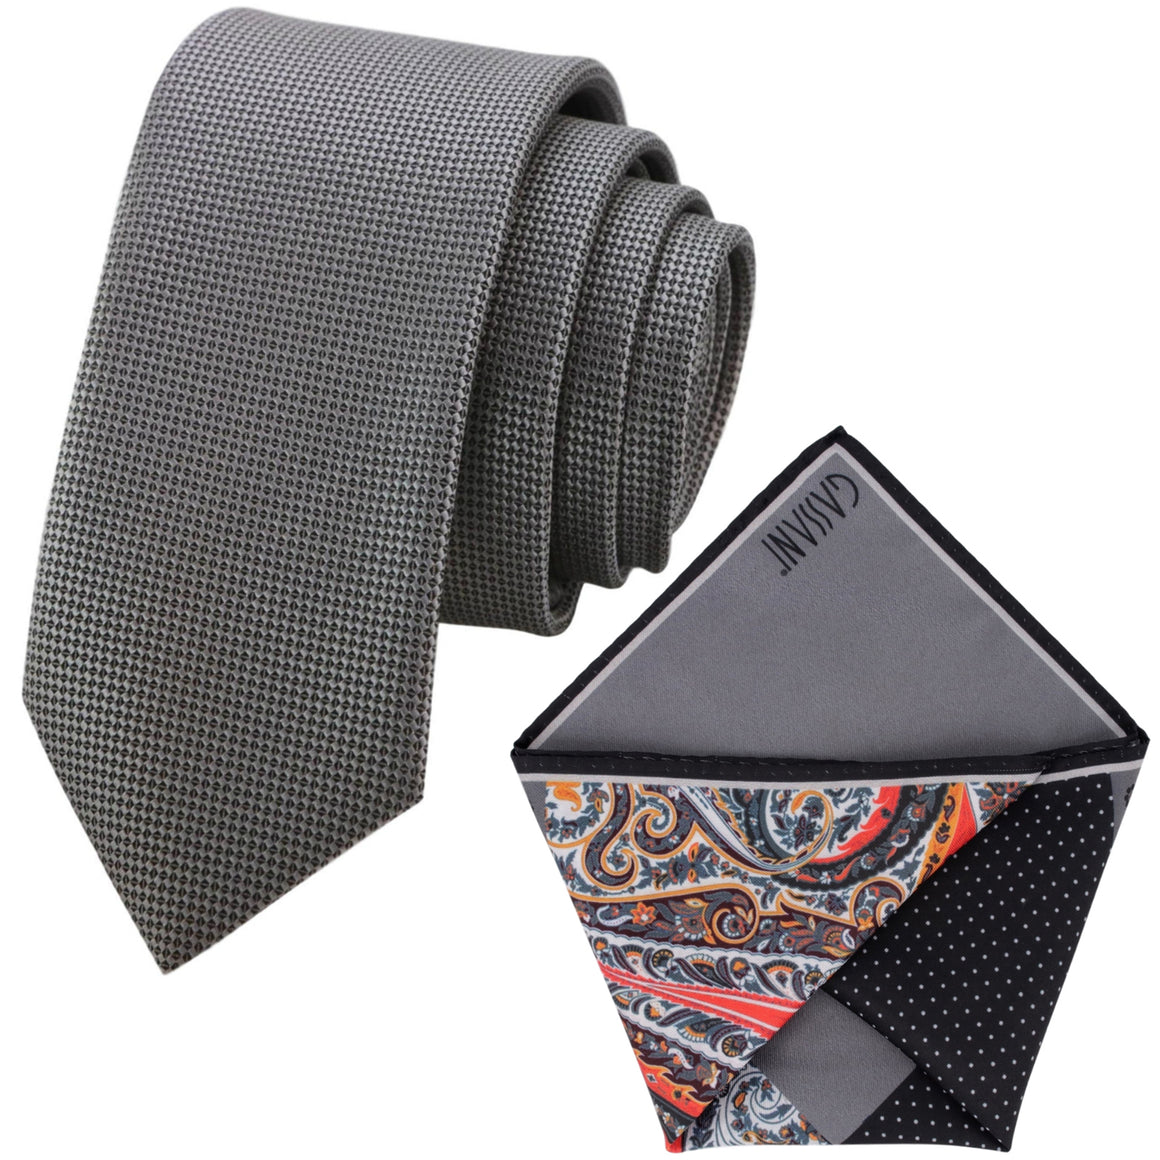 Parure cravatta GASSANI, larghezza 6 cm, cravatta uomo stretta grigia, fazzoletto lungo, 4 disegni colorati